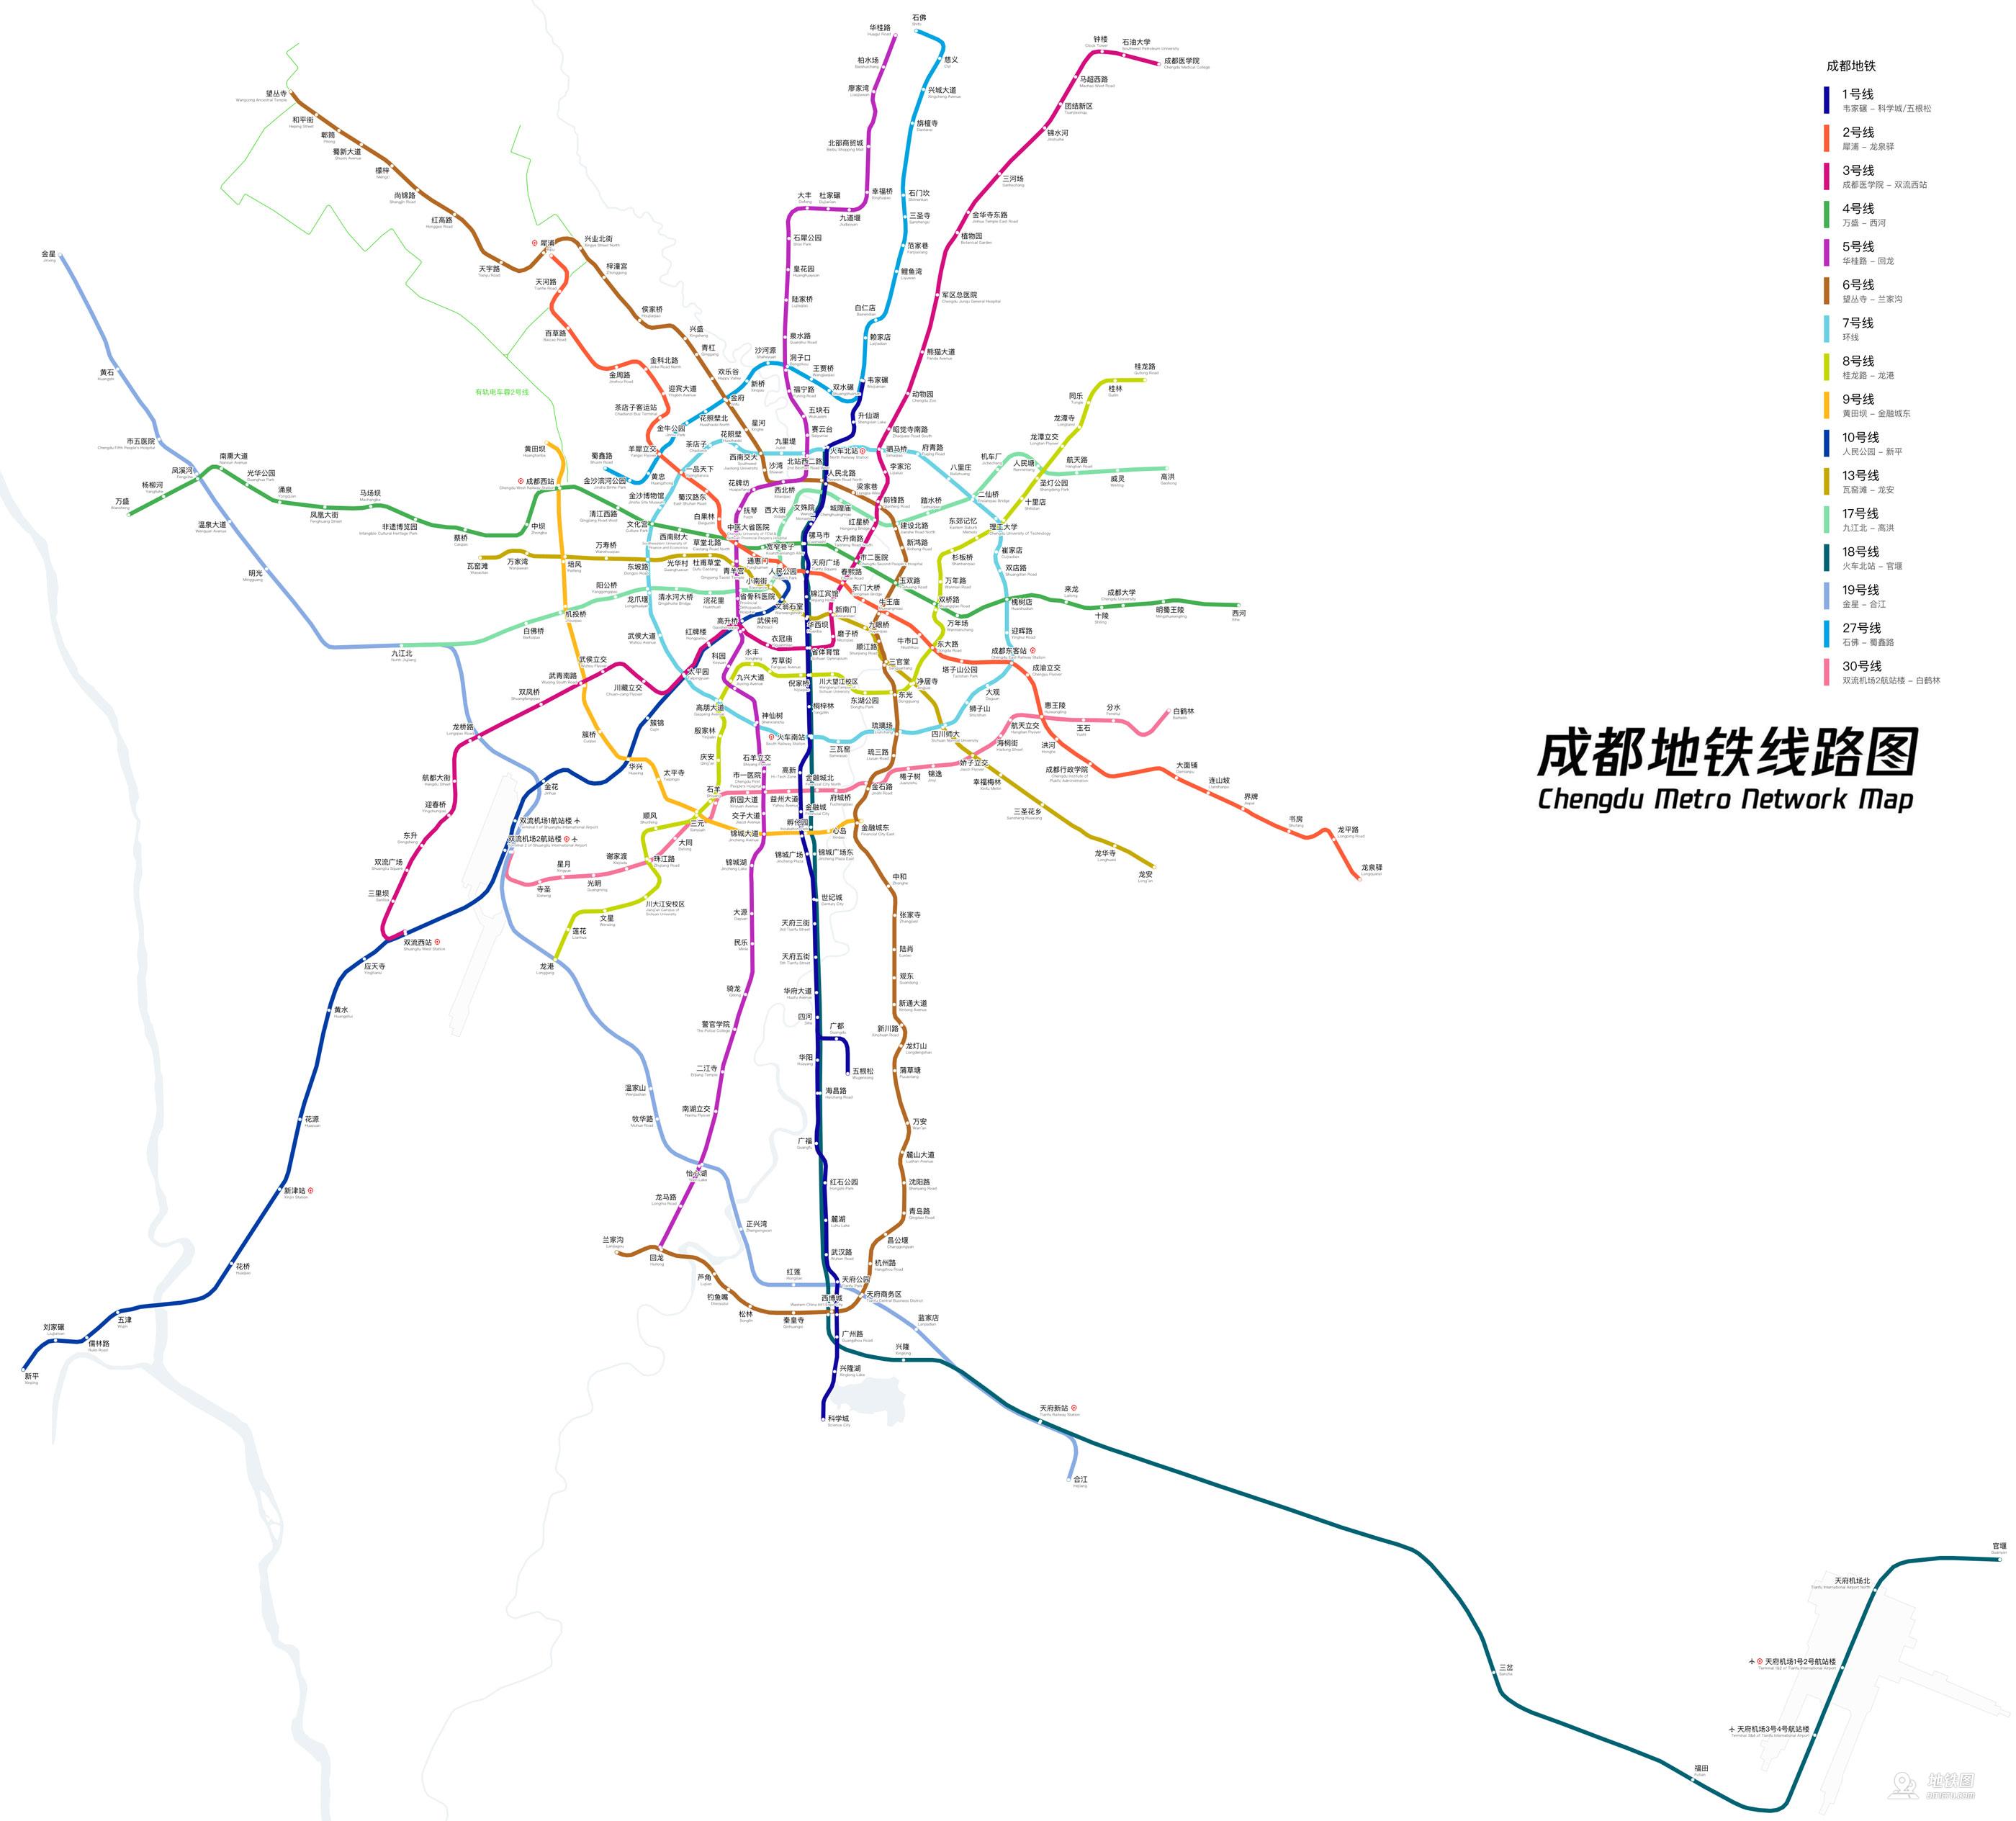 成都地铁线路图成都地铁线路图 实景版成都地铁线路图 官方版(注